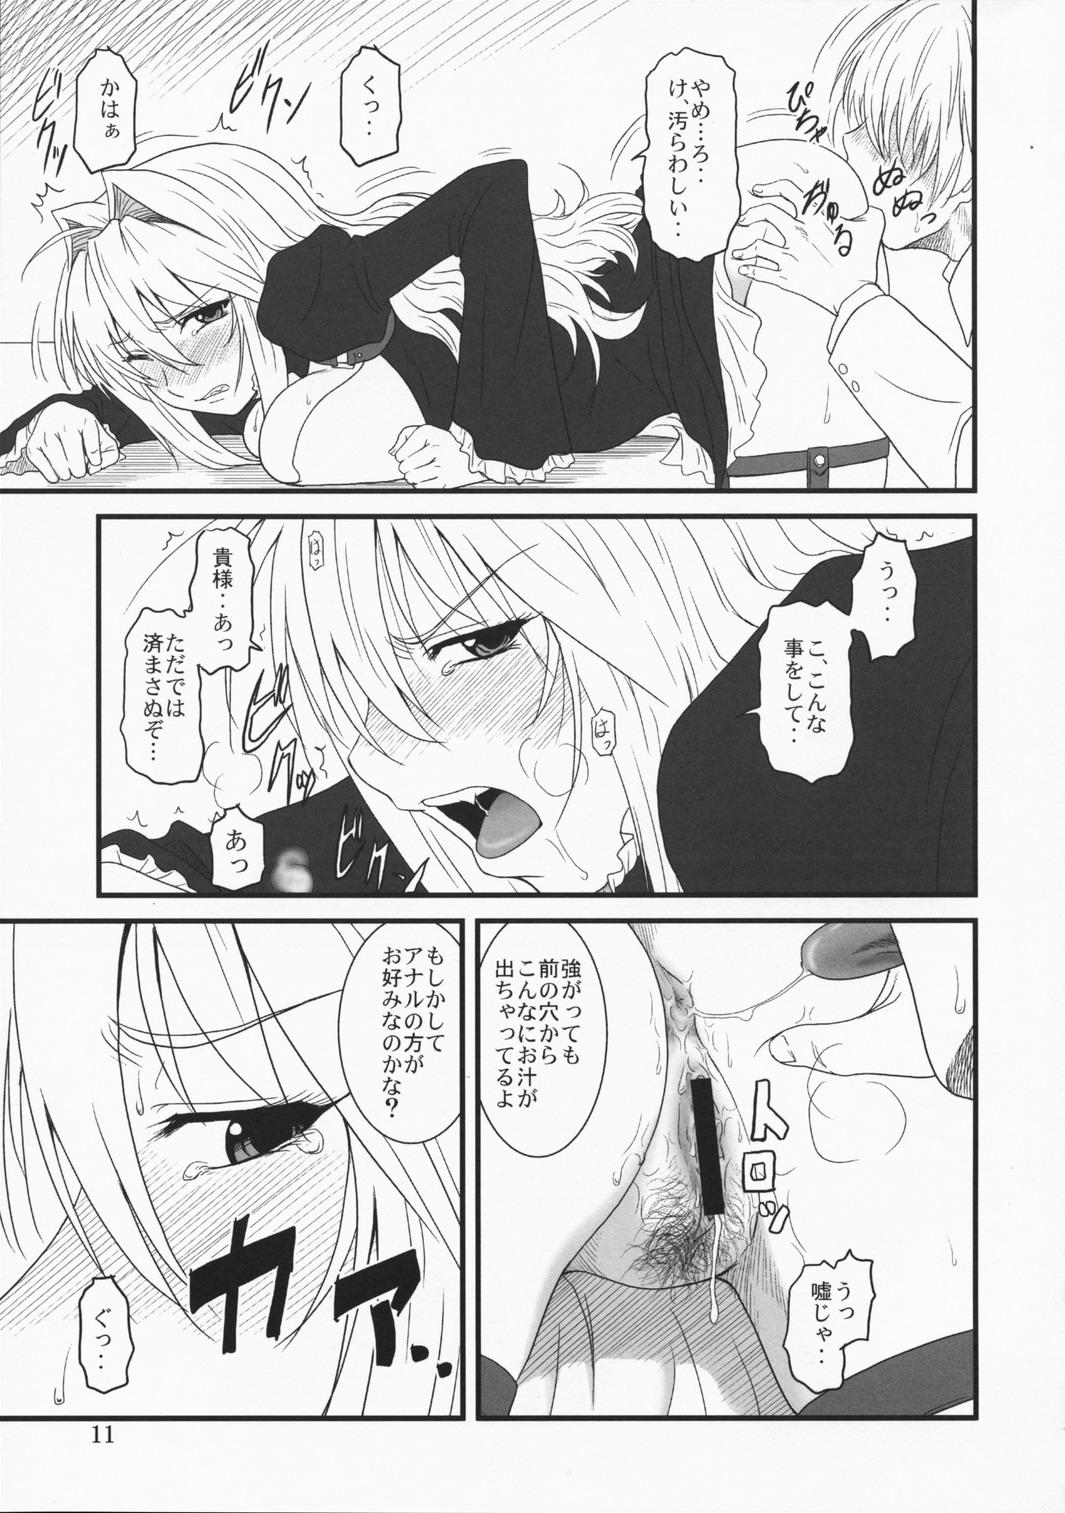 Licking Ochita Sekirei - Sekirei Gays - Page 10